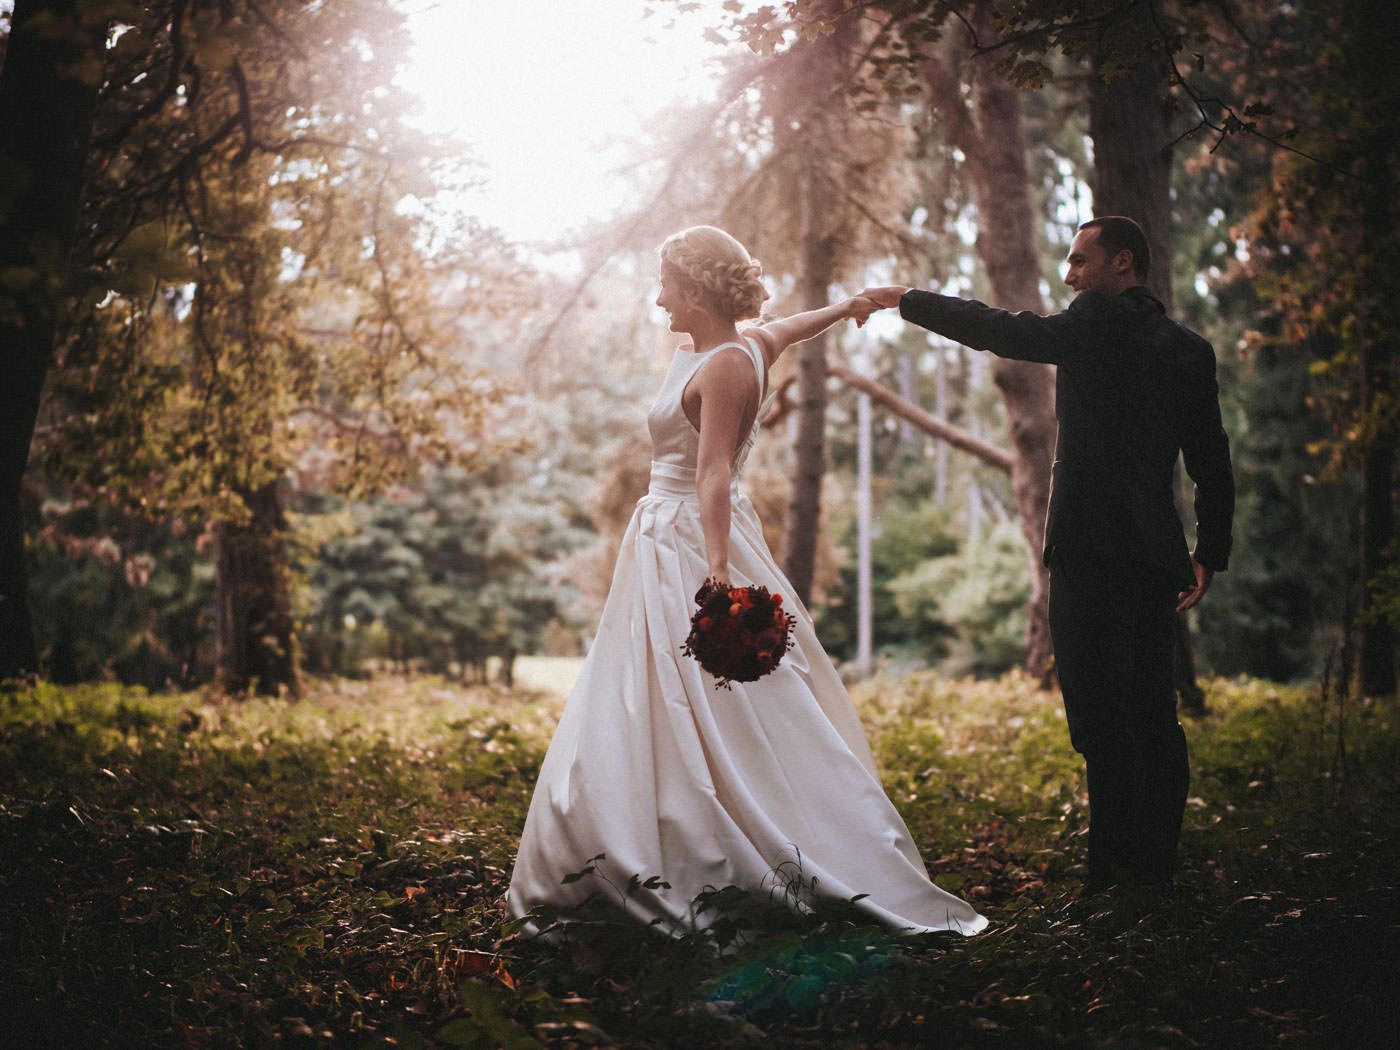 Brautpaar tanzend im Wald mit Gegenlicht von der schon tiefstehenden Sonne- Hochzeitsfotos Schloss Saareck